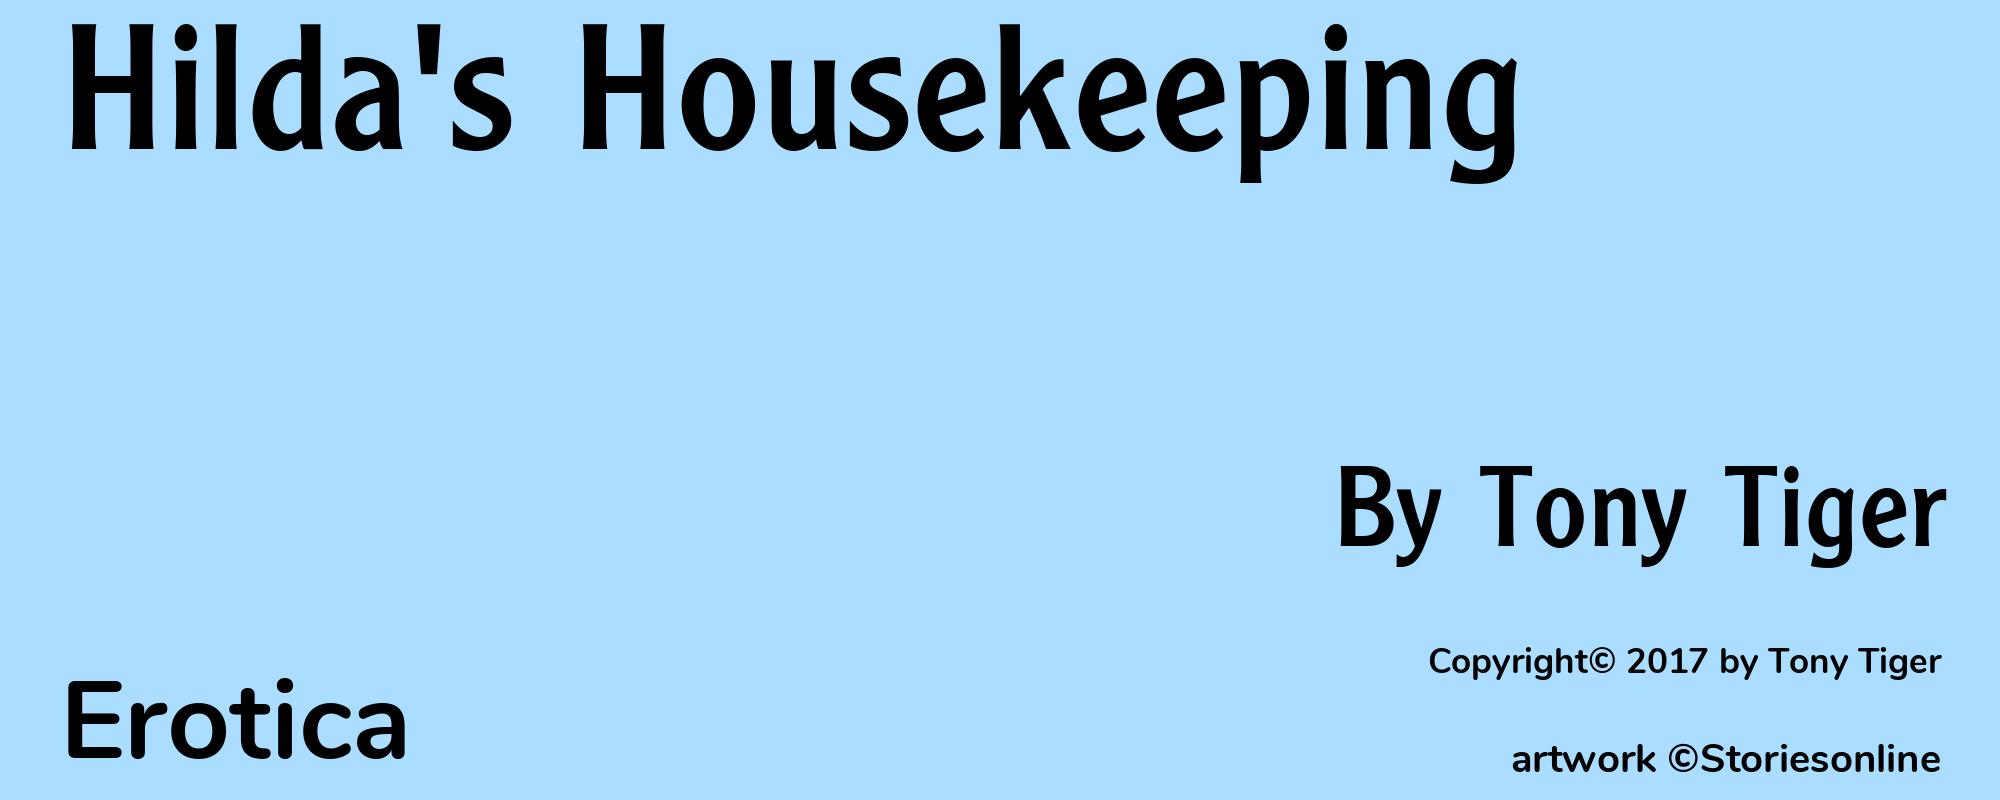 Hilda's Housekeeping - Cover